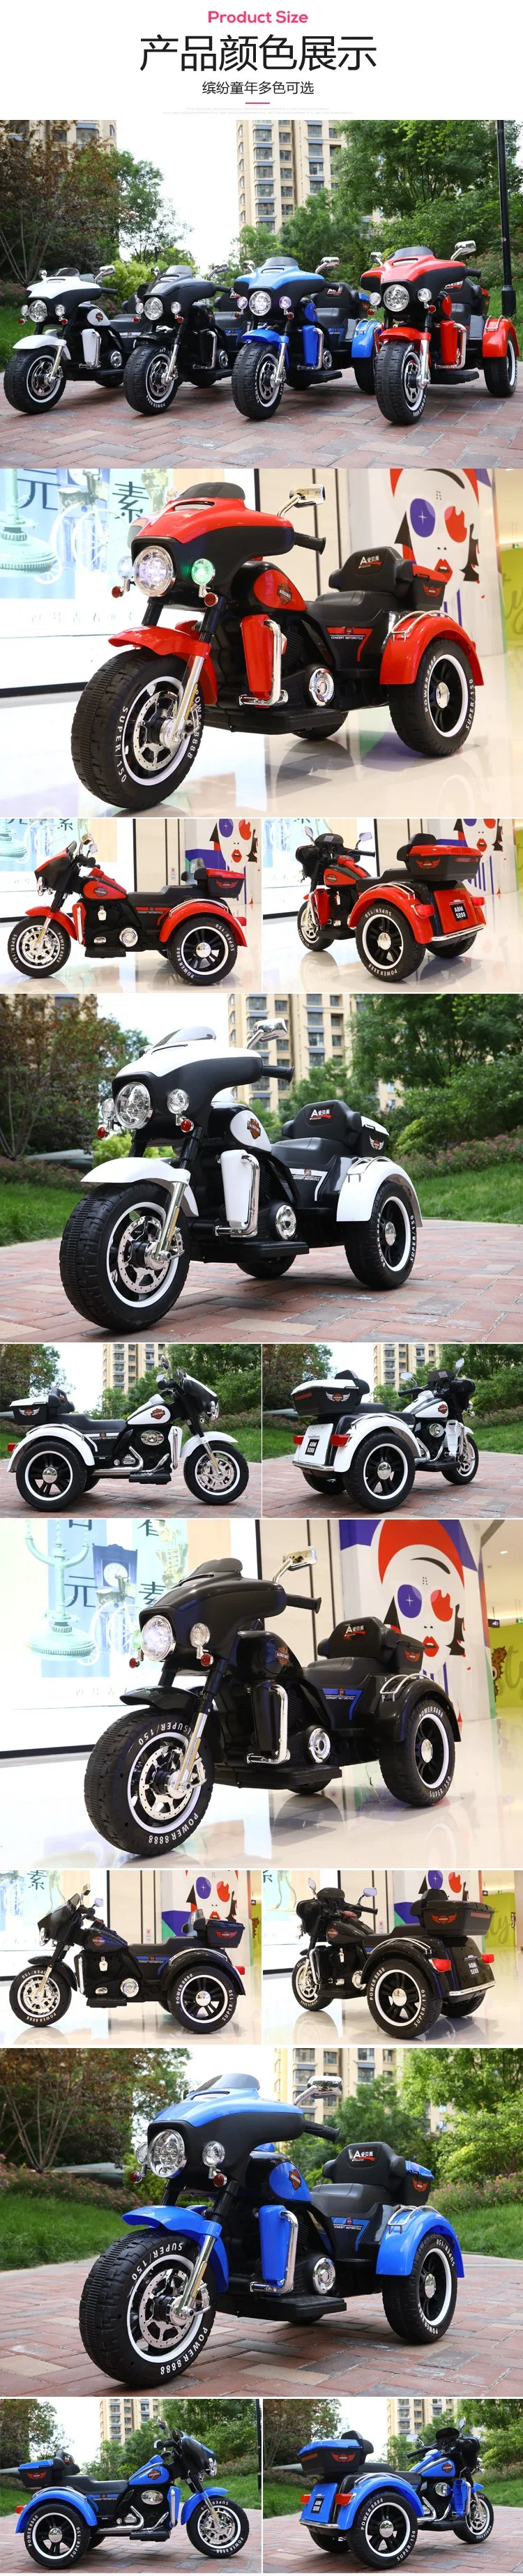 Best Selling Kids Electric Motorcycle Three Wheel Motorcycle